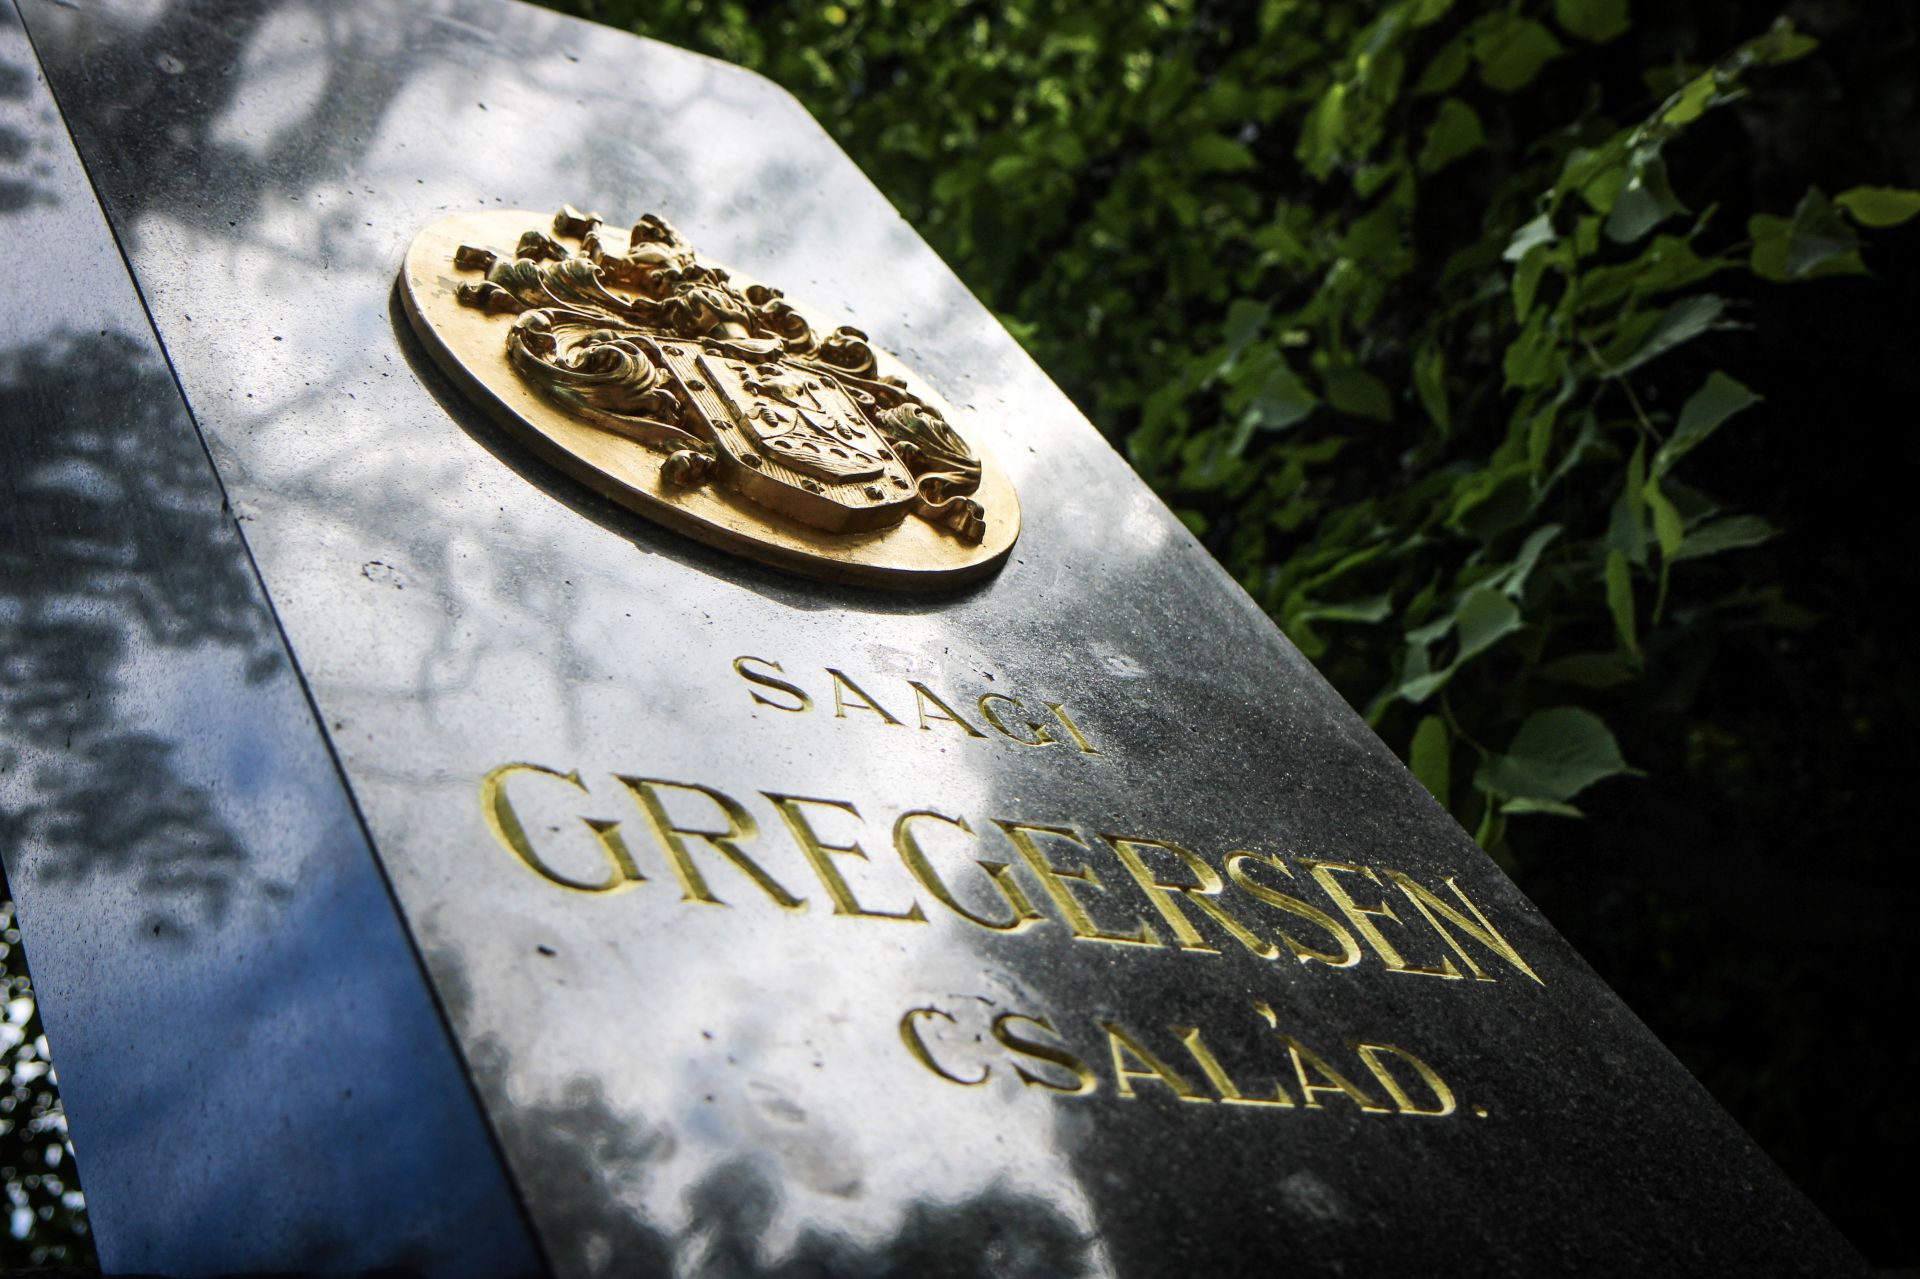 Gregersen Gudbrand építőmesterre emlékeztünk a Fiumei úti sírkertben